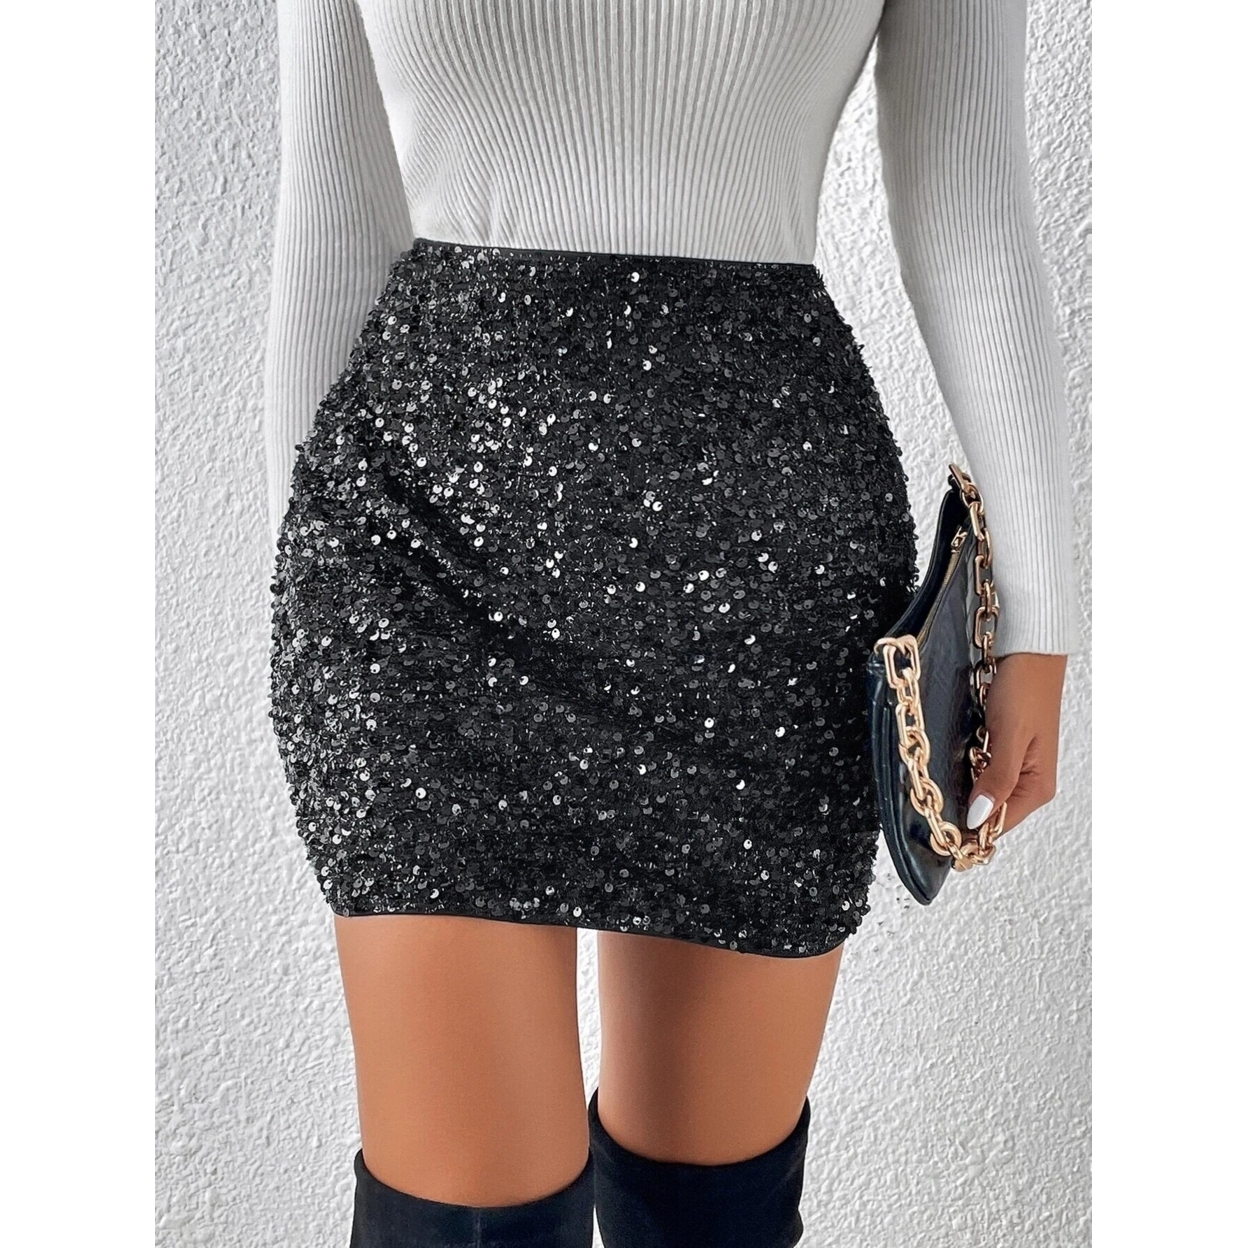 High Waist Sequin Bodycon Skirt - Black, Small